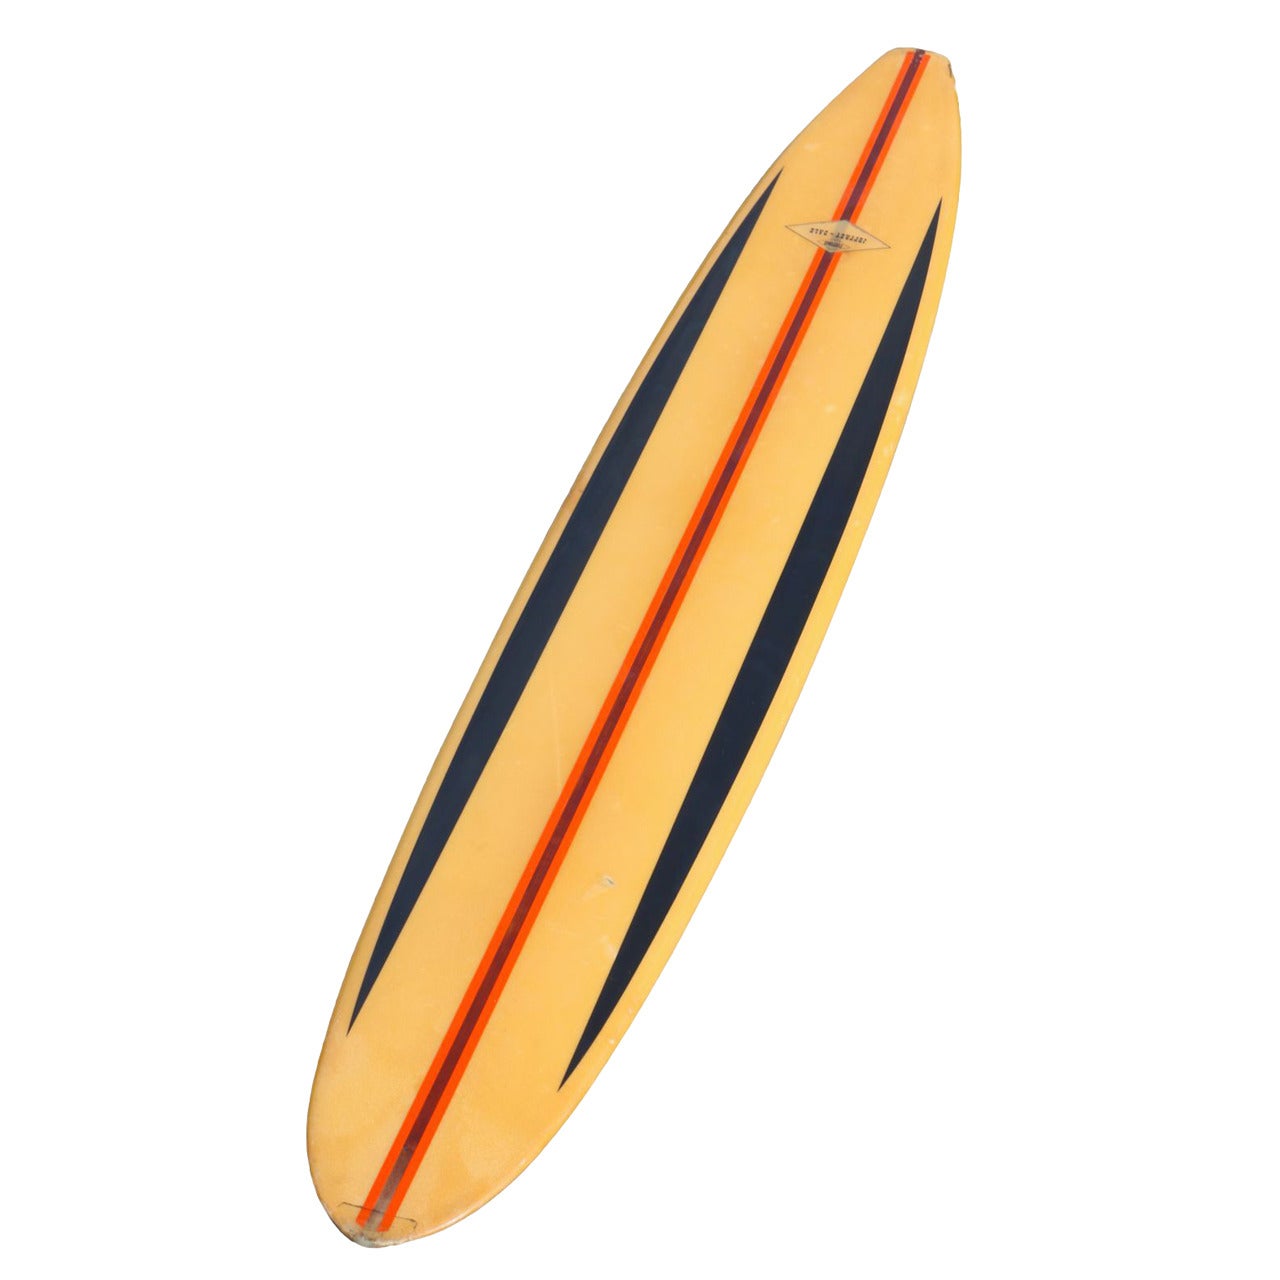 California Semi-Gun Surfboard Shaped by Dale Velzy for Jeffrey Dale 1962